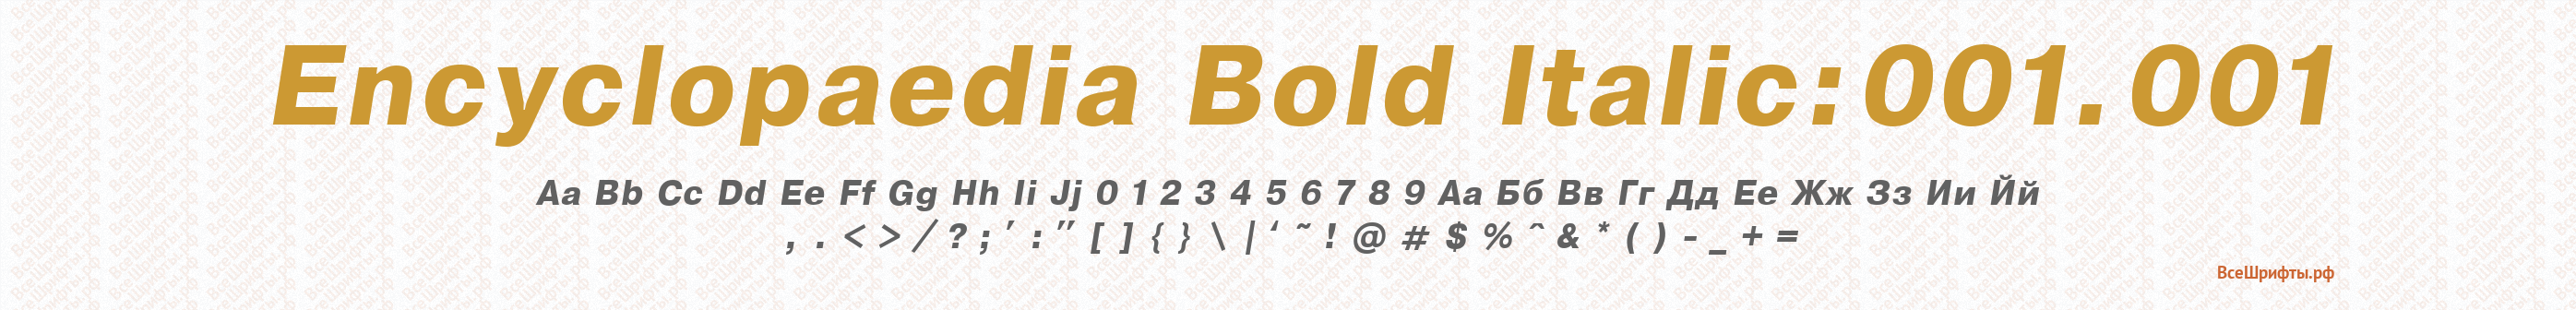 Шрифт Encyclopaedia Bold Italic:001.001